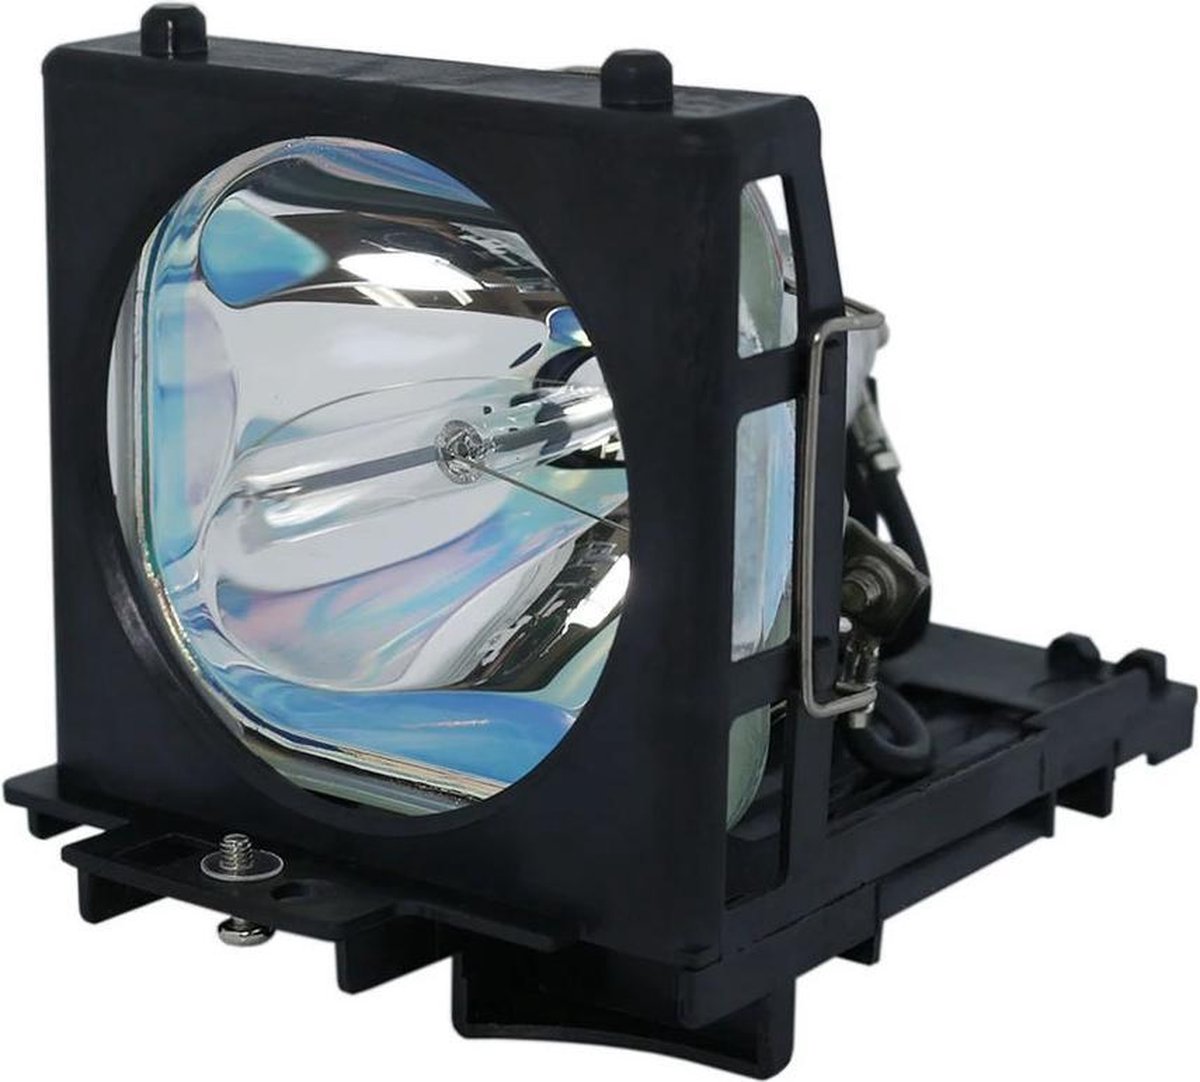 Beamerlamp geschikt voor de HITACHI PJ-TX100 beamer, lamp code DT00661. Bevat originele UHP lamp, prestaties gelijk aan origineel.